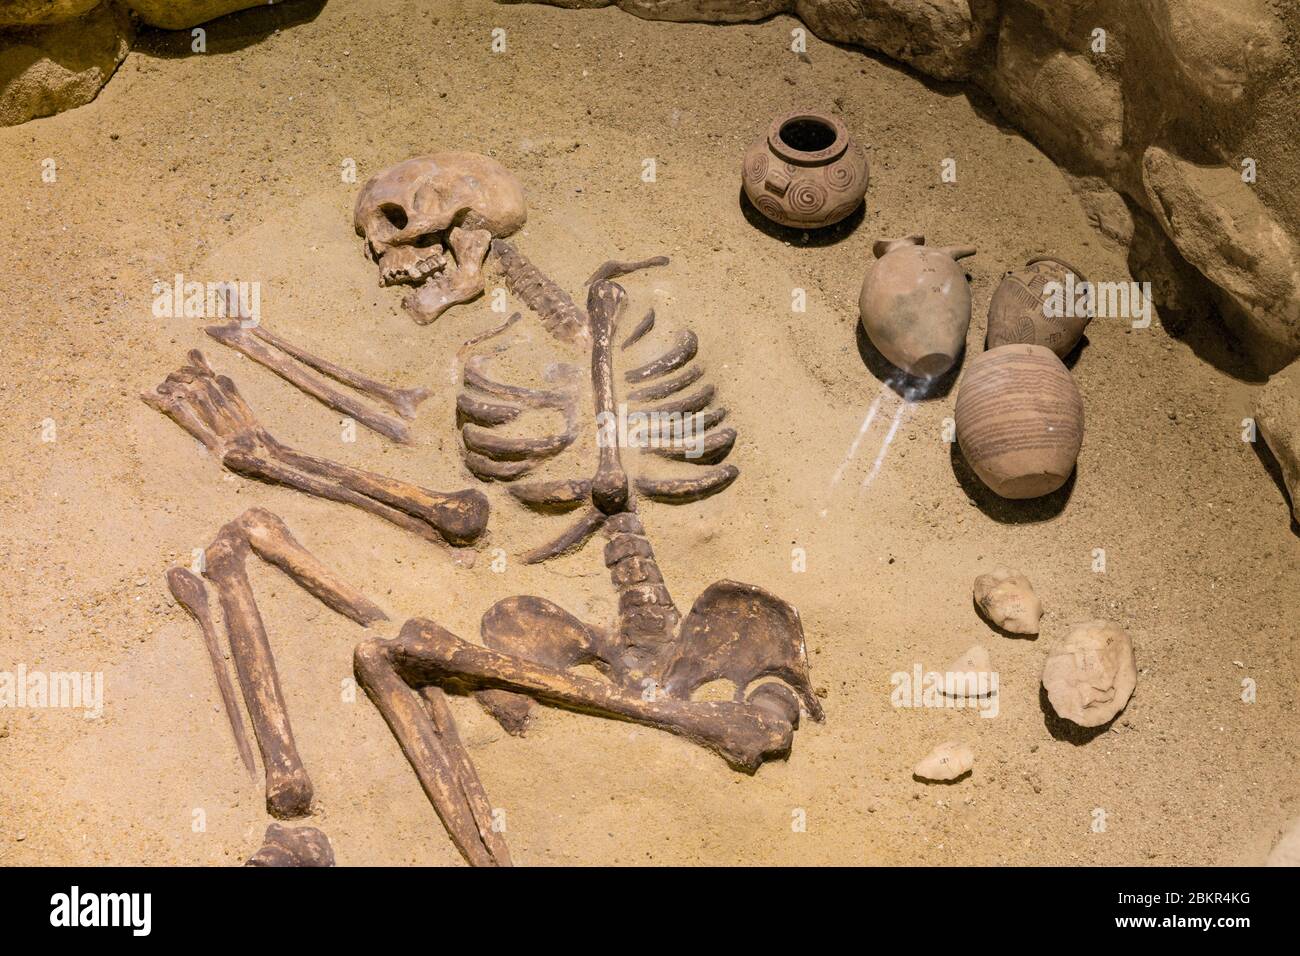 Egypt, Upper Egypt, Nile valley, Aswan, Nubia Museum, Nagada period burial Stock Photo